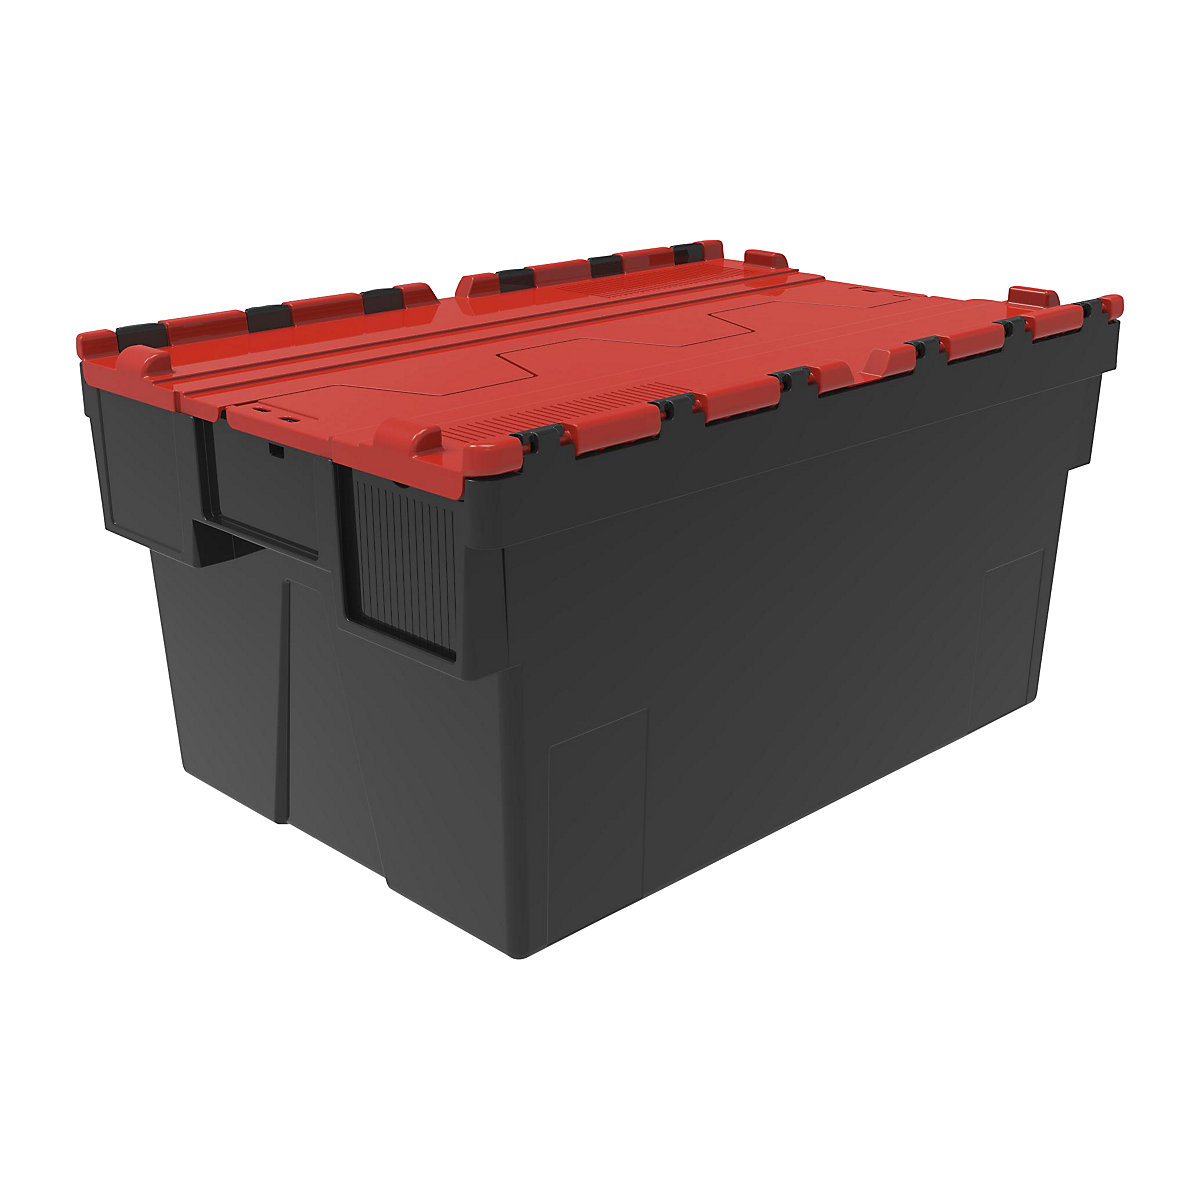 Többször használható rakásolható tároló, h x szé x ma 600 x 400 x 310 mm, cs. e. 5 db, fekete színben, piros fedéllel